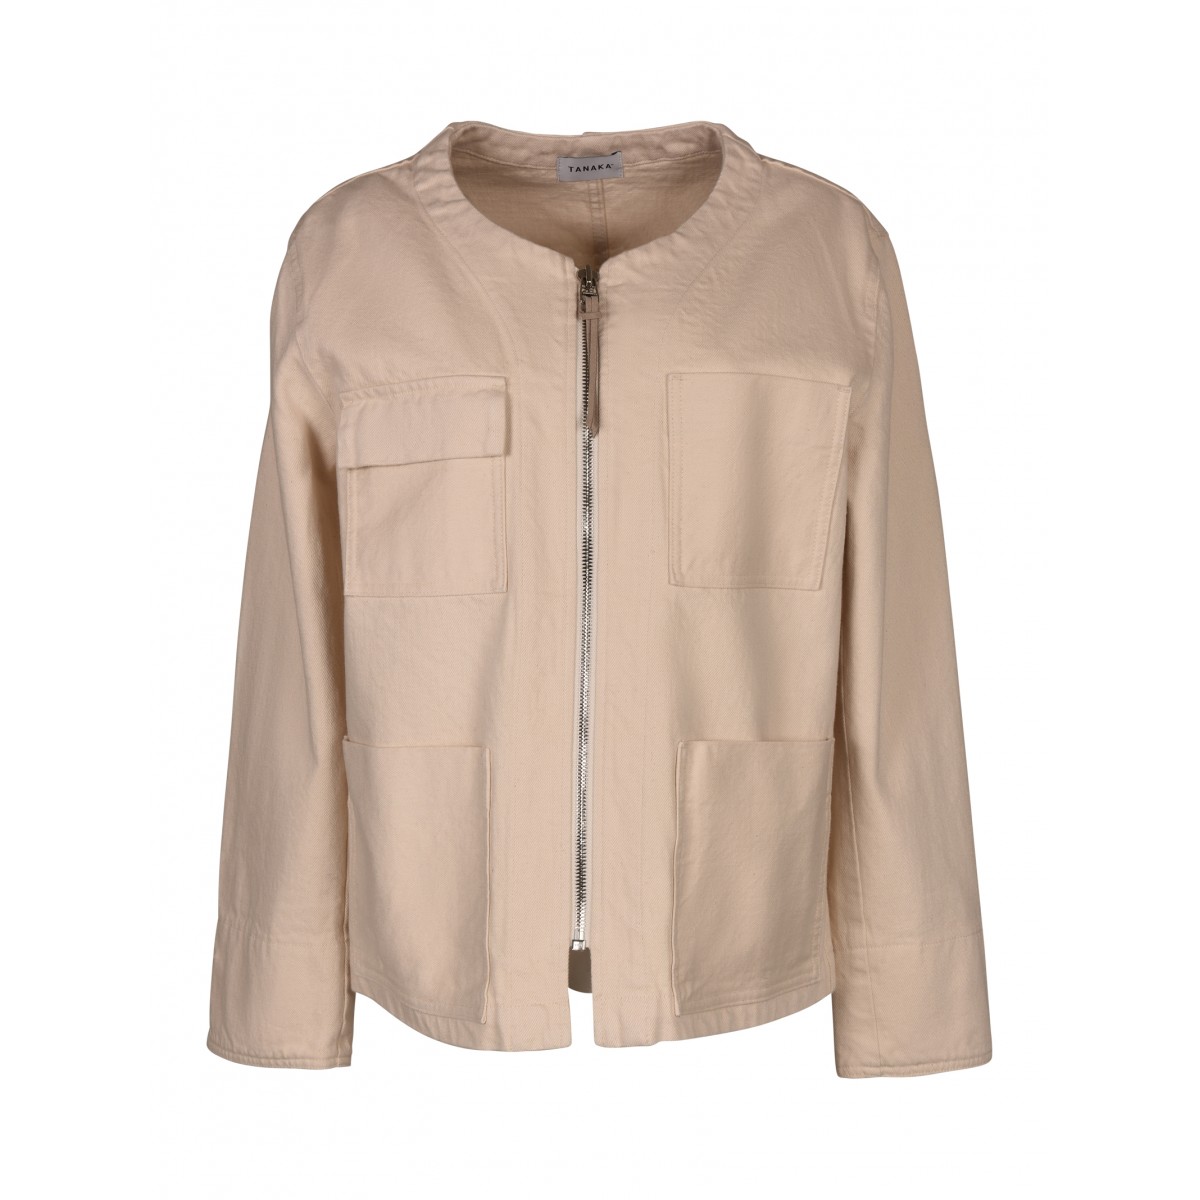 Beige Cotton Jacket with zip